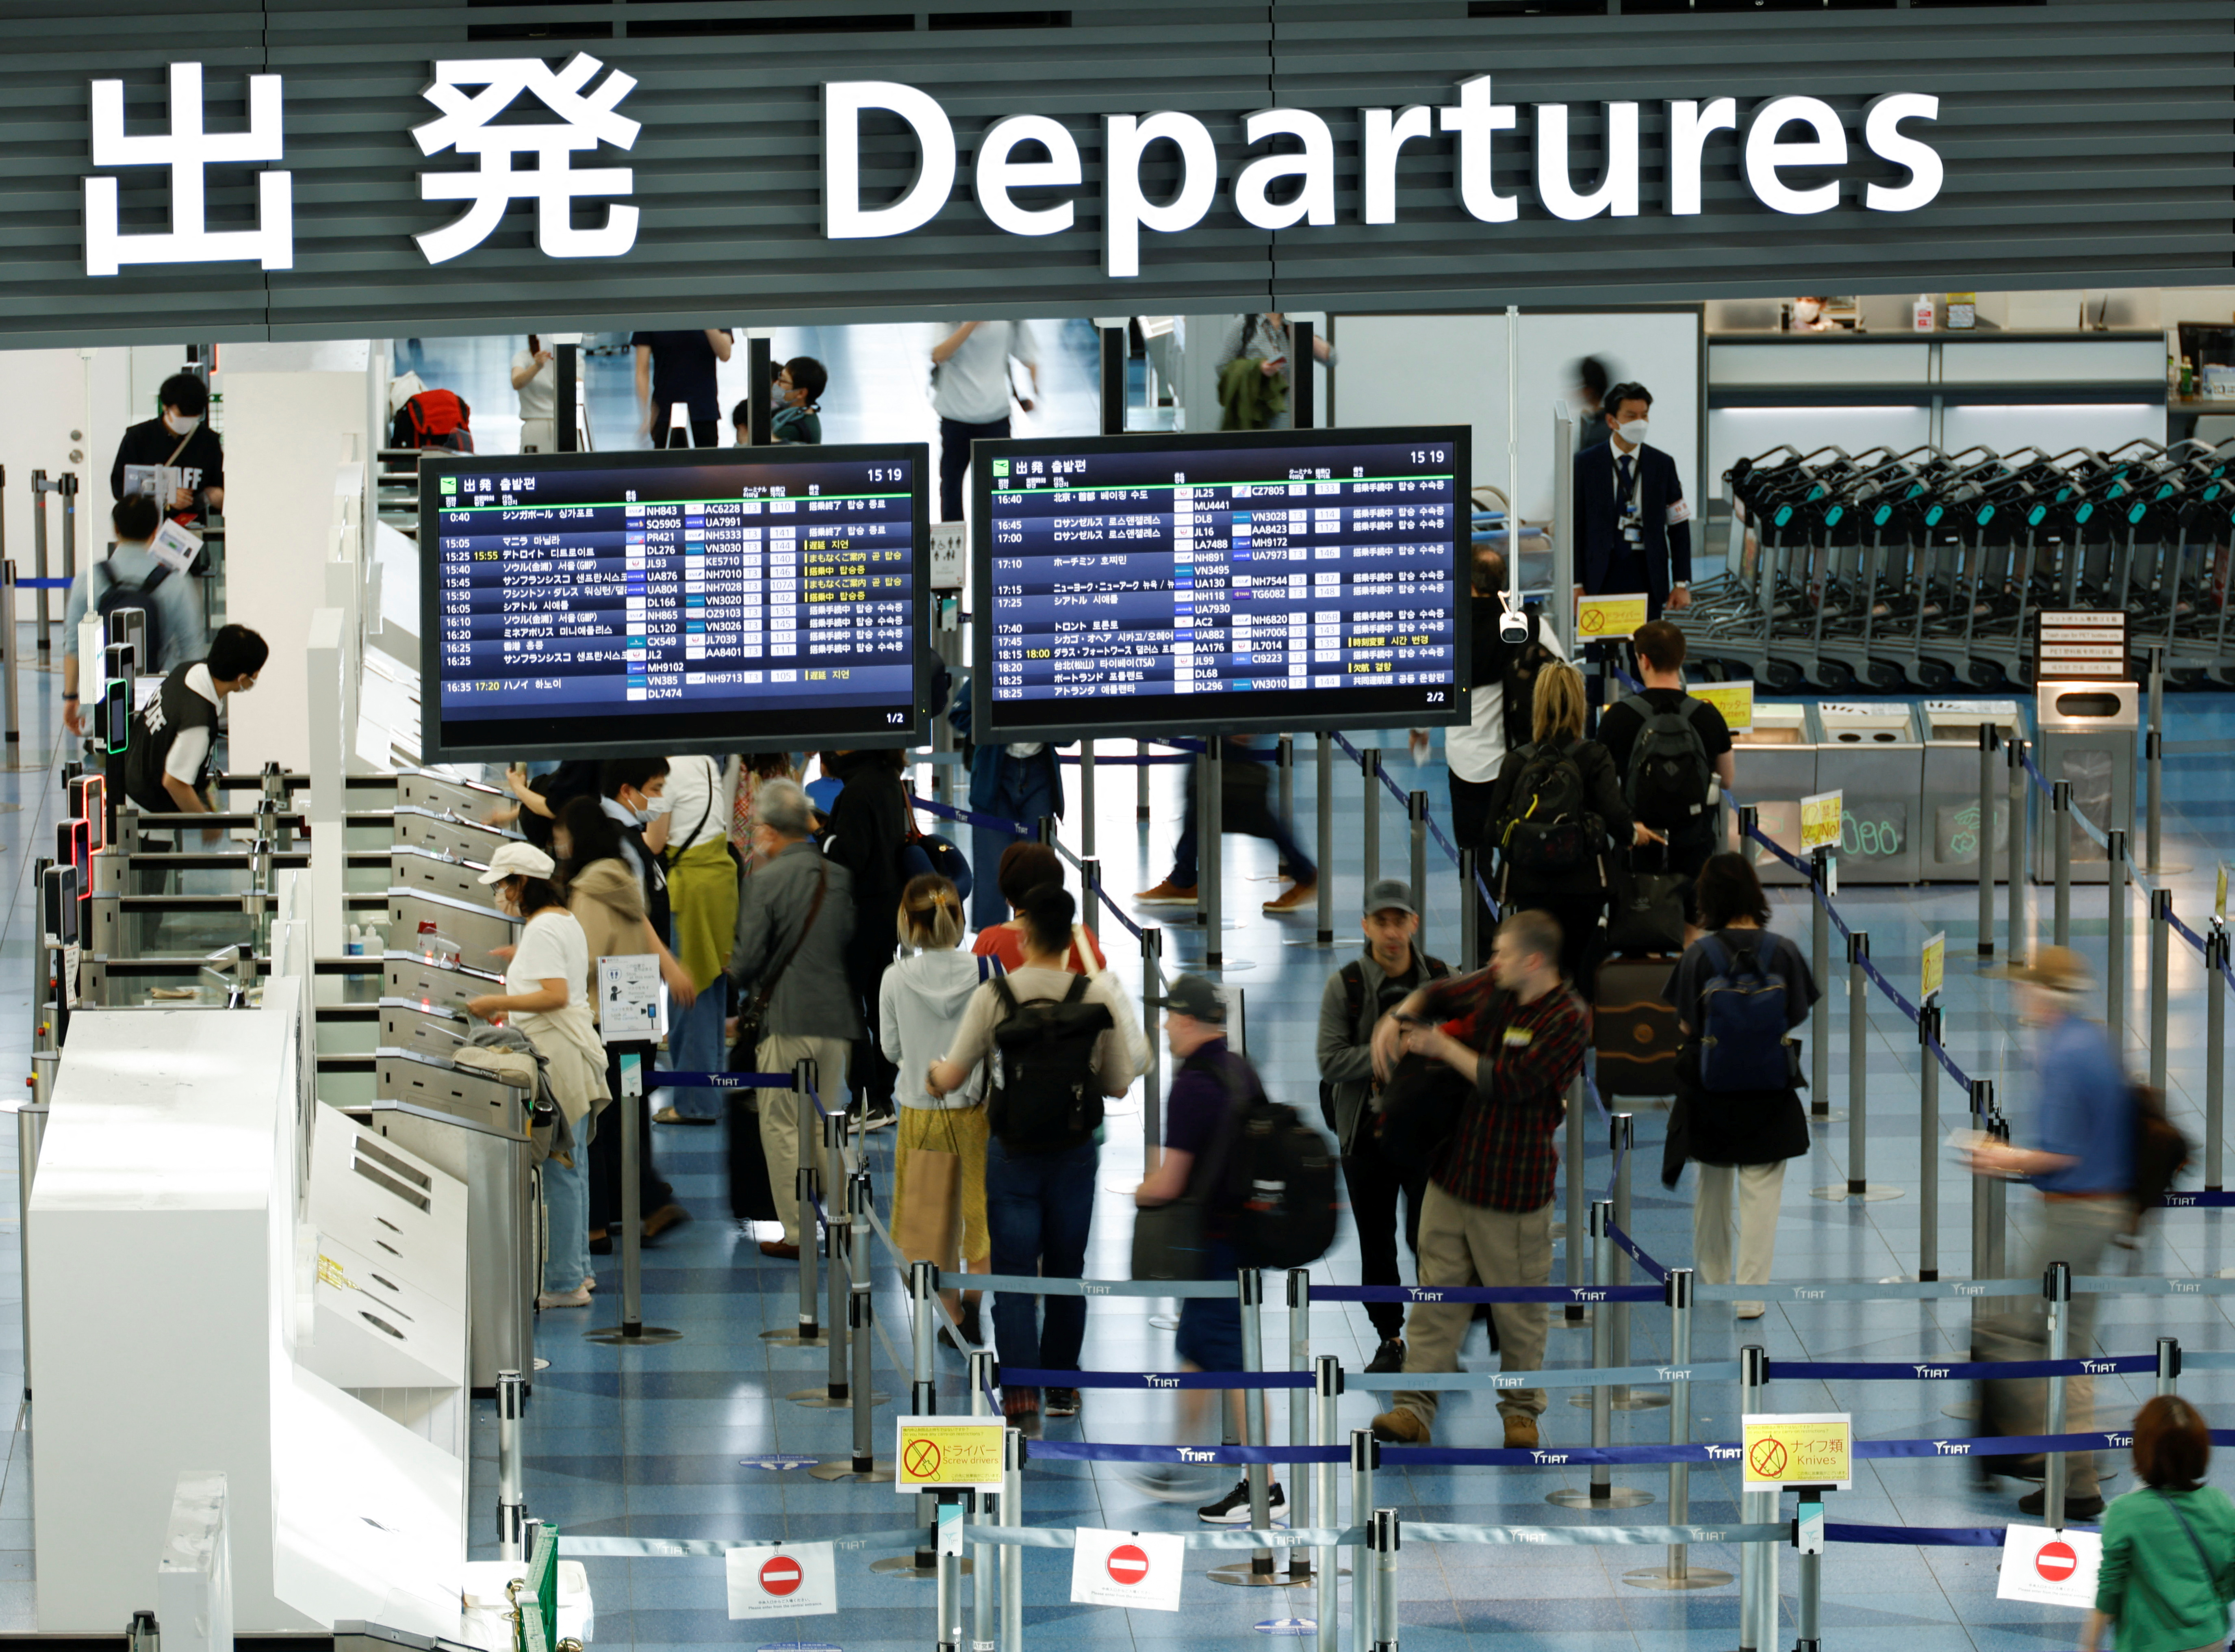 日本正在考虑对海外游客（访日客）修改免除消费税制度。由于愈来愈多游客购买免税品后在日本国内转售图利，为了打击这种诈欺行为，日本政府研议让游客在出境前才退还消费税，新制可能于2025年上路。图为东京羽田机场／路透